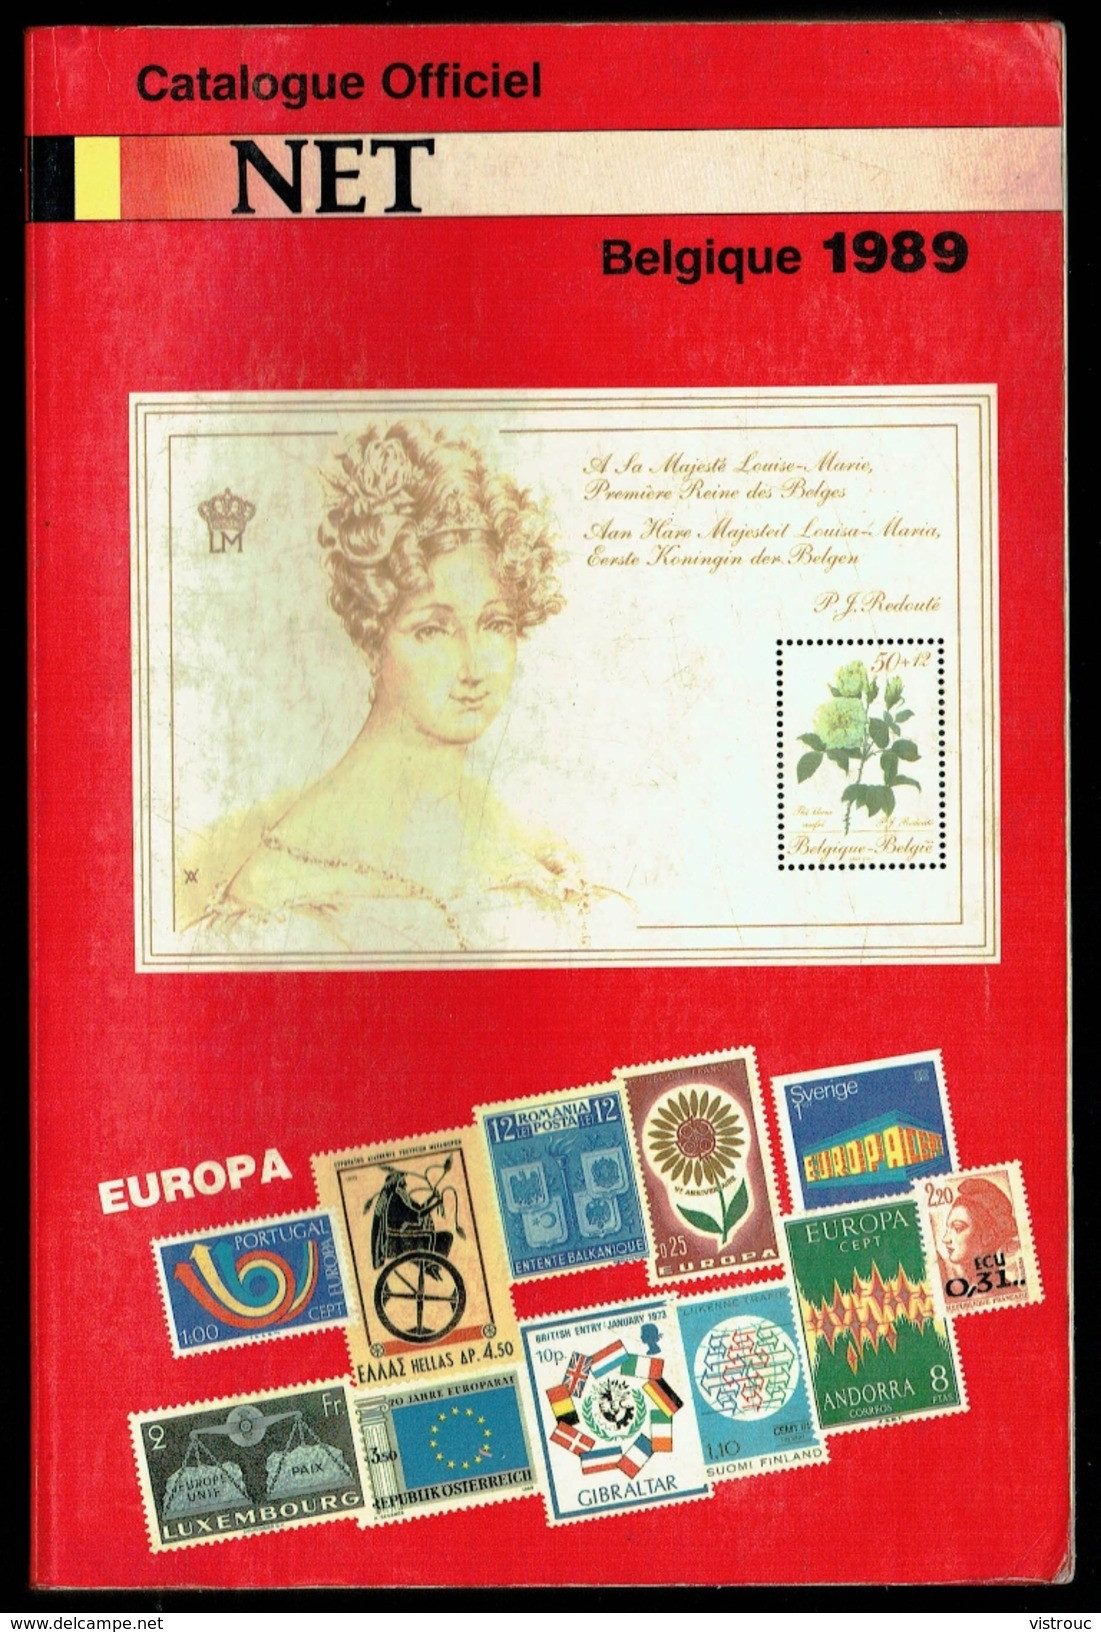 Catalogue Officiel NET (FR) 1989 - Timbres De Belgique. - Belgio